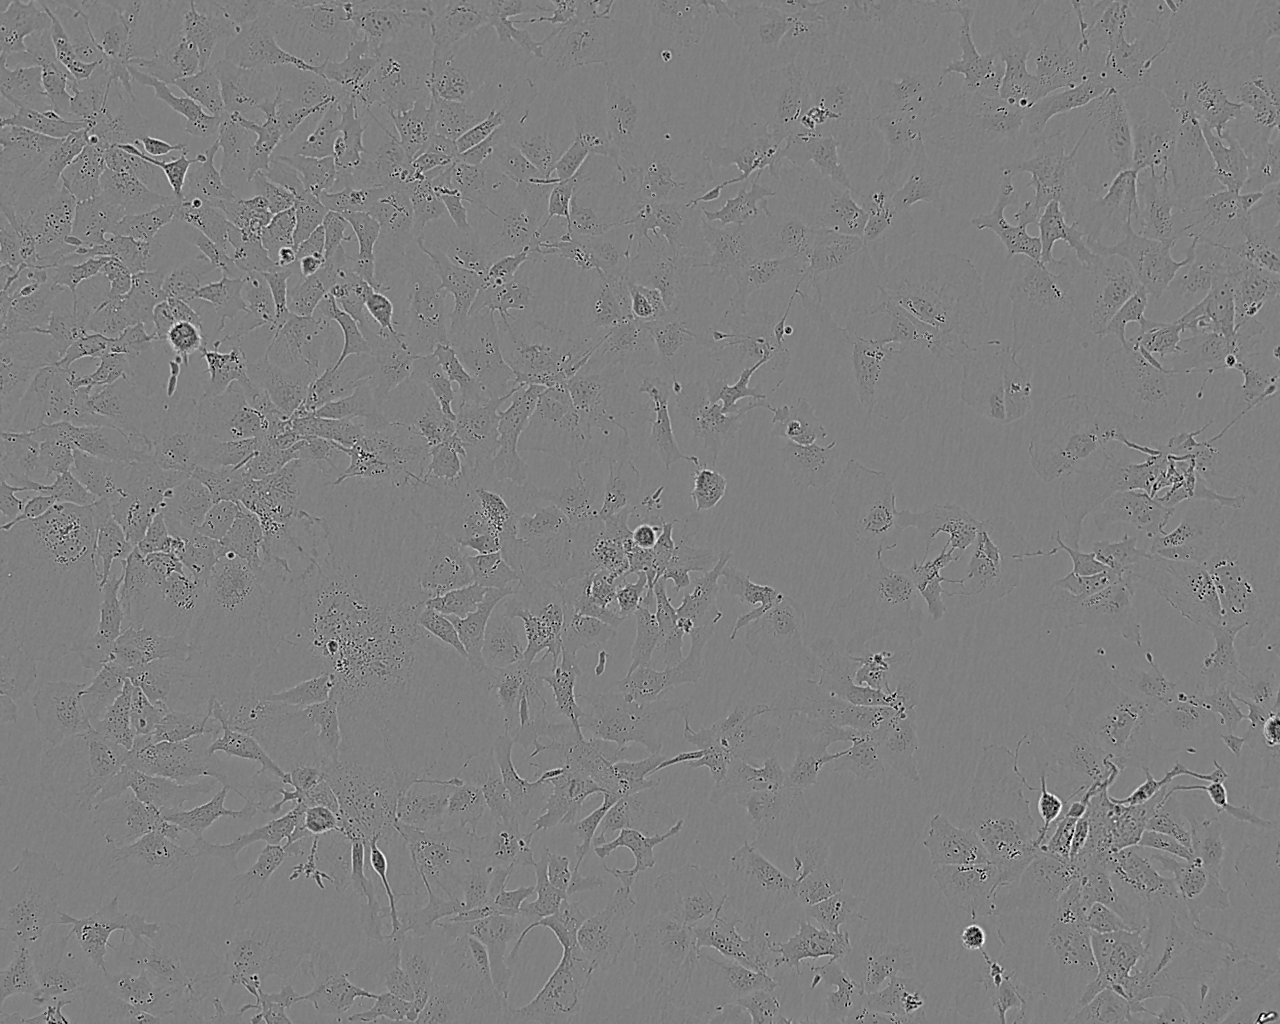 NCI-H838 Fresh Cells|人肺癌细胞(送STR基因图谱),NCI-H838 Fresh Cells